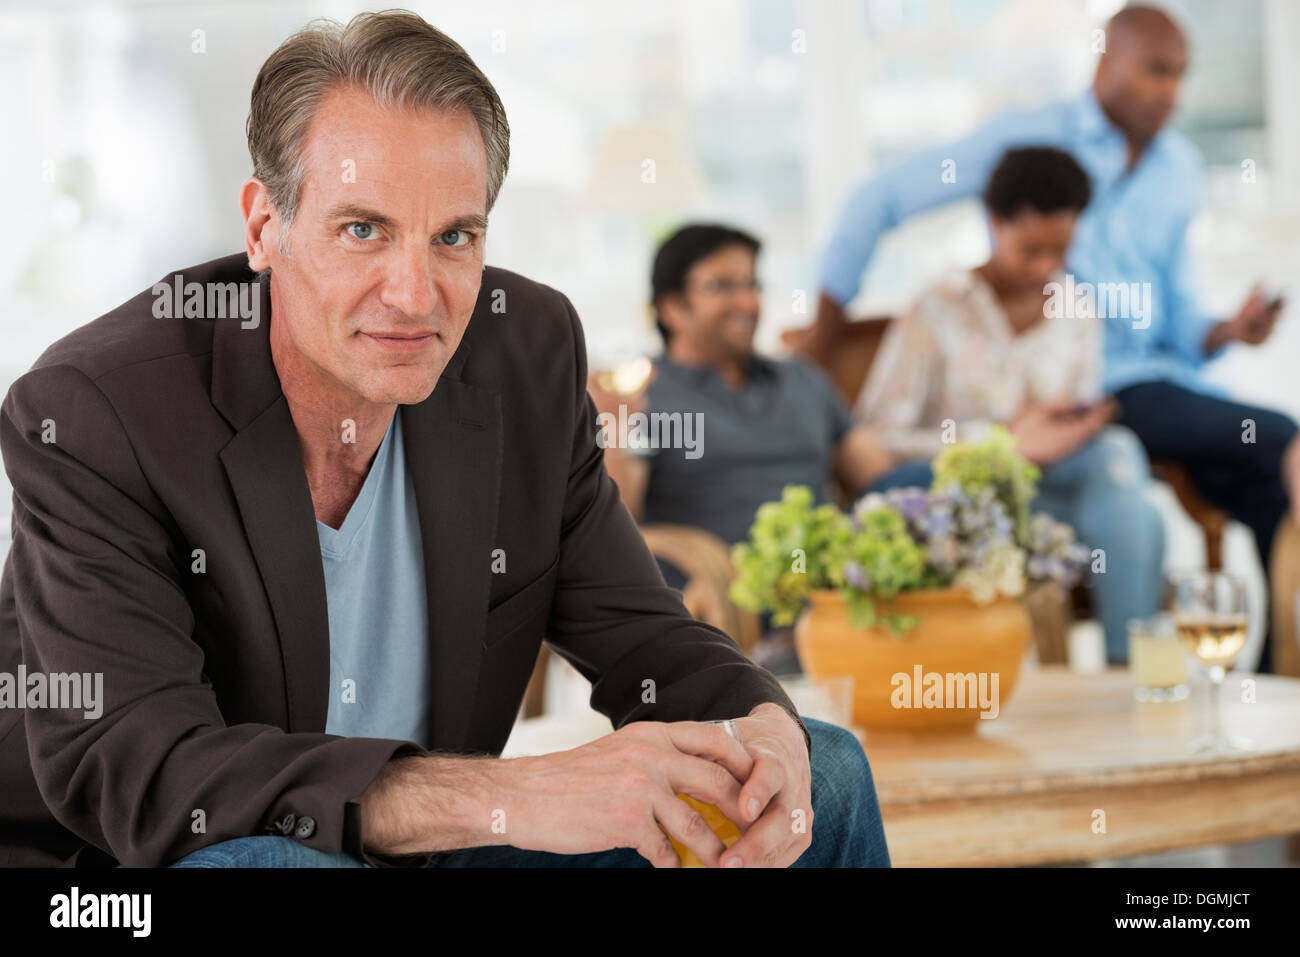 Evento di Office. Un uomo seduto lontano dal gruppo. Foto Stock